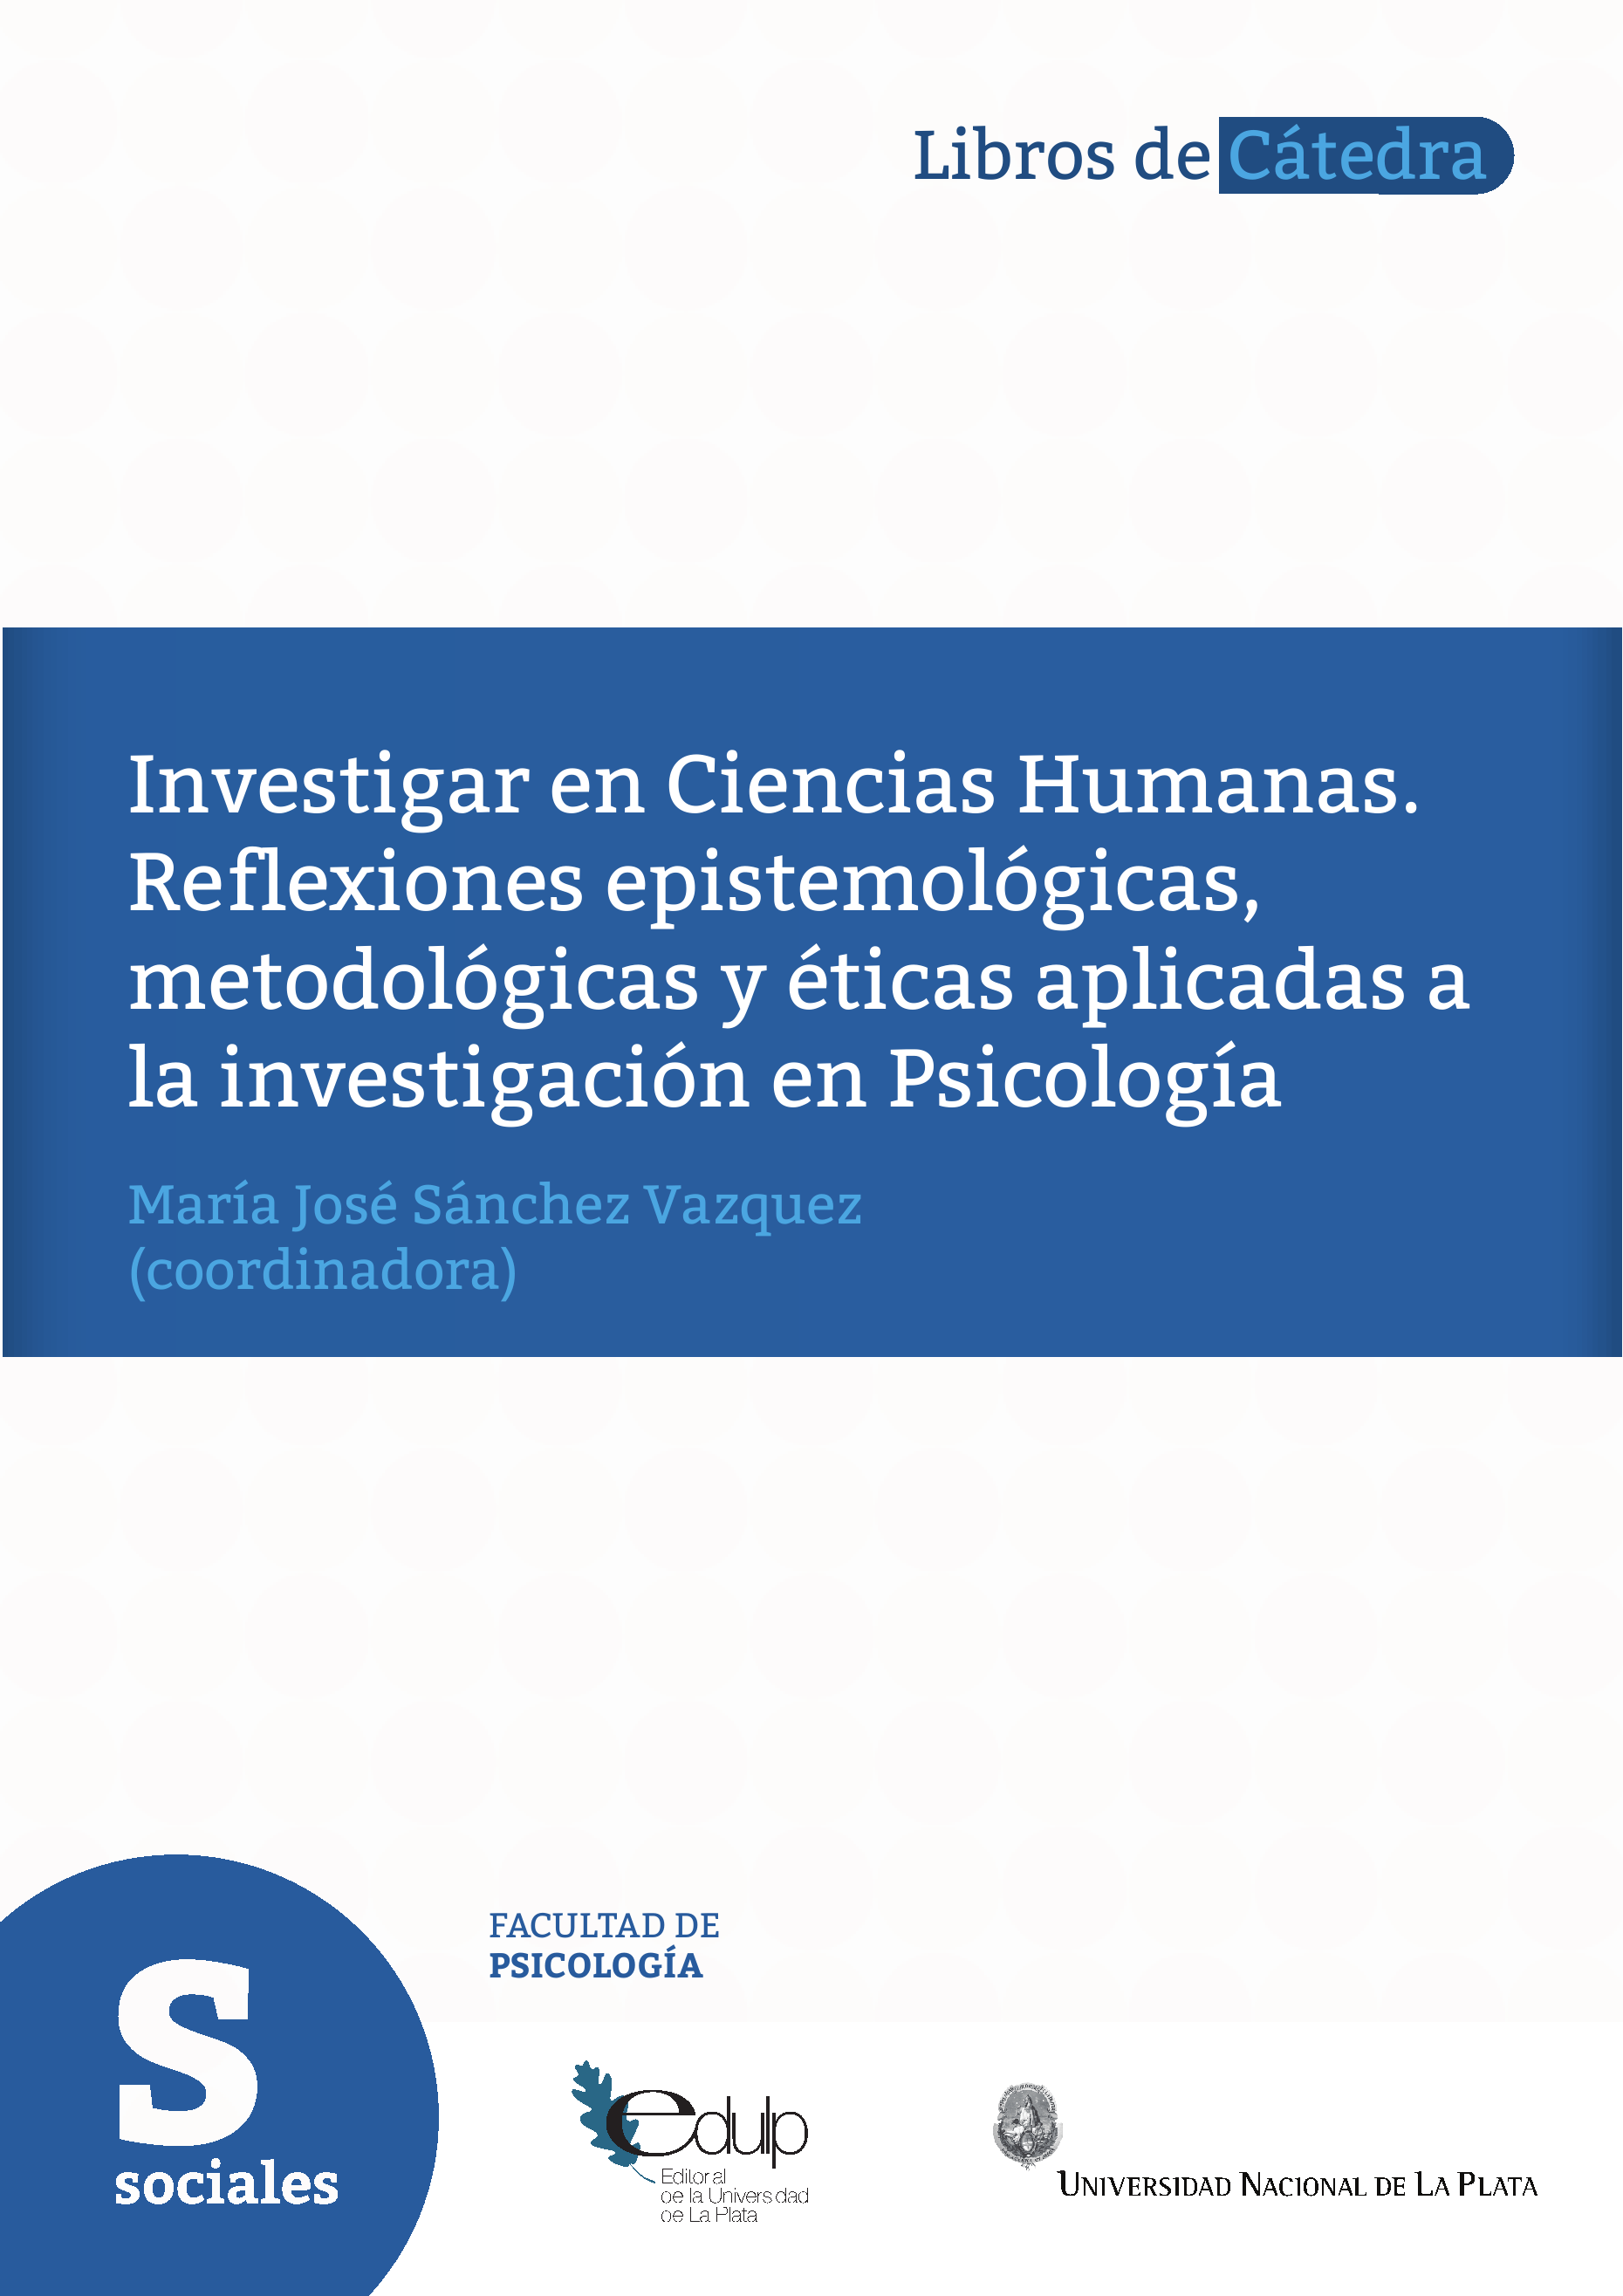 Investigar en Ciencias Humanas: Reflexiones epistemológicas, metodológicas  y éticas aplicadas a la investigación en Psicología